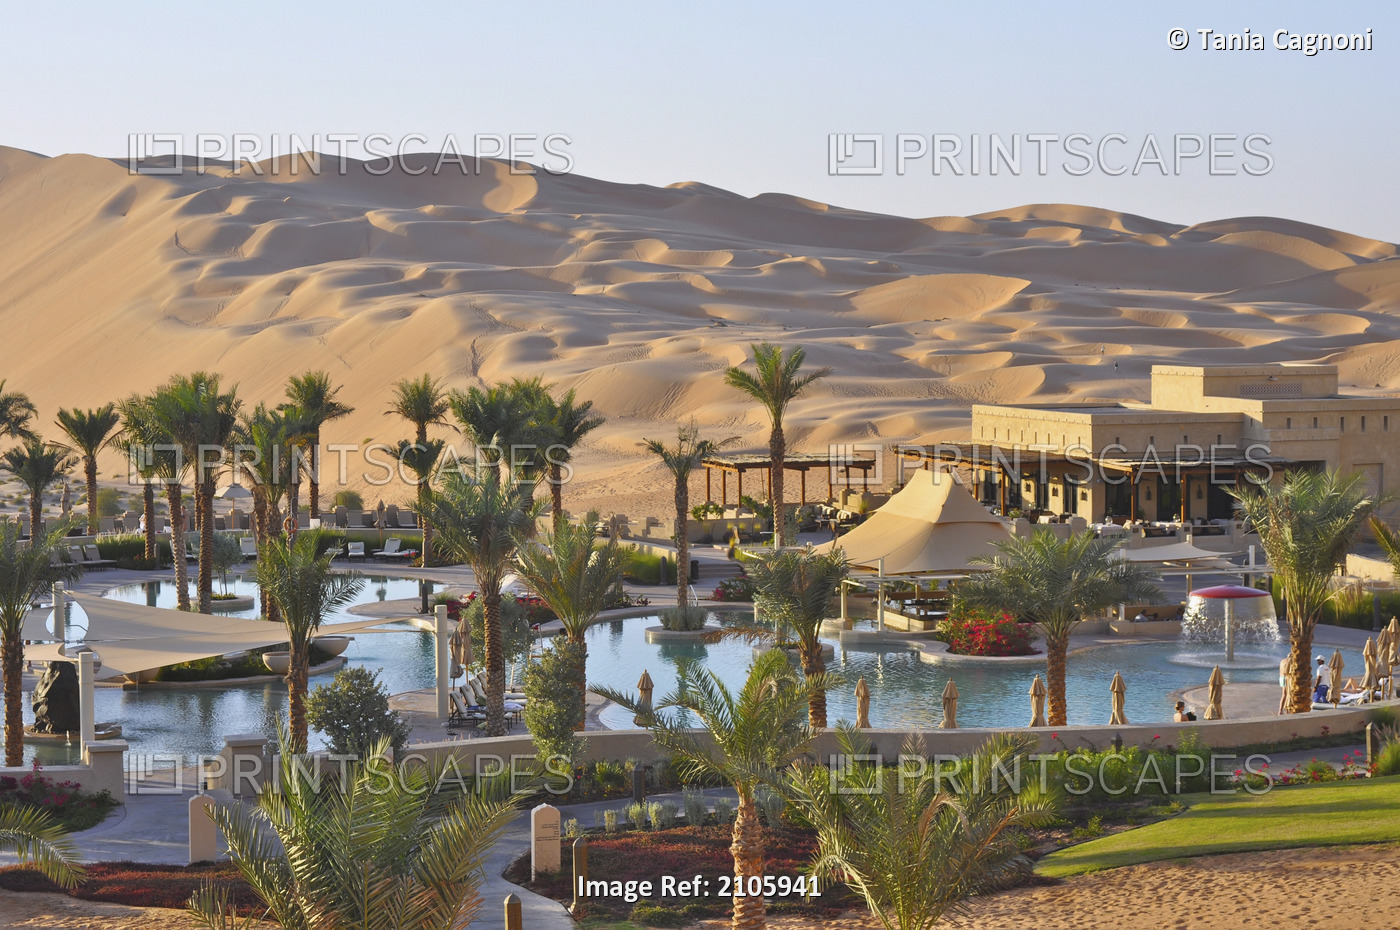 United Arab Emirates, Abu Dahbi, Qasr al Sarab, Qasr al Sarab hotel and dunes